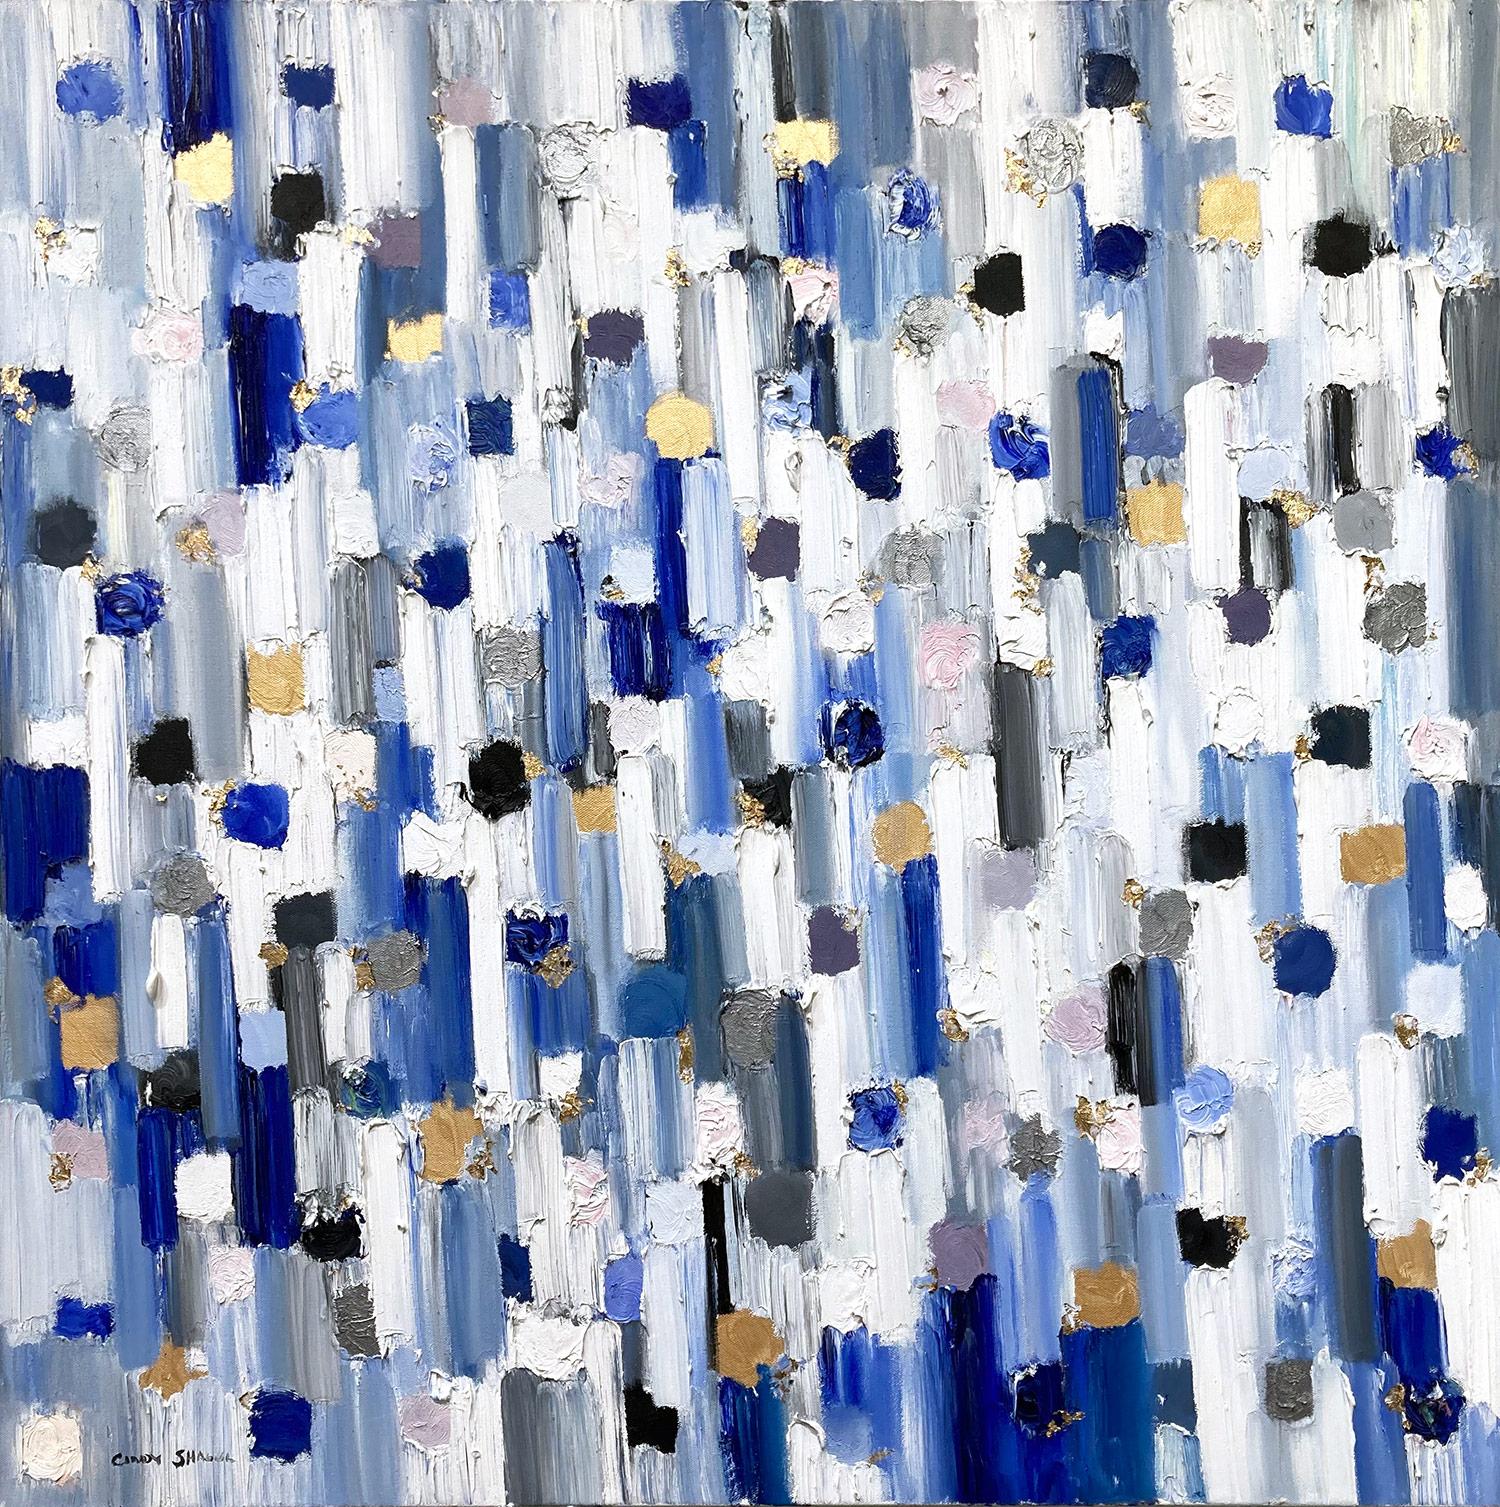 Abstract Painting Cindy Shaoul - "Dripping Dots - Geneva" Peinture à l'huile contemporaine multicolore sur toile avec dorure